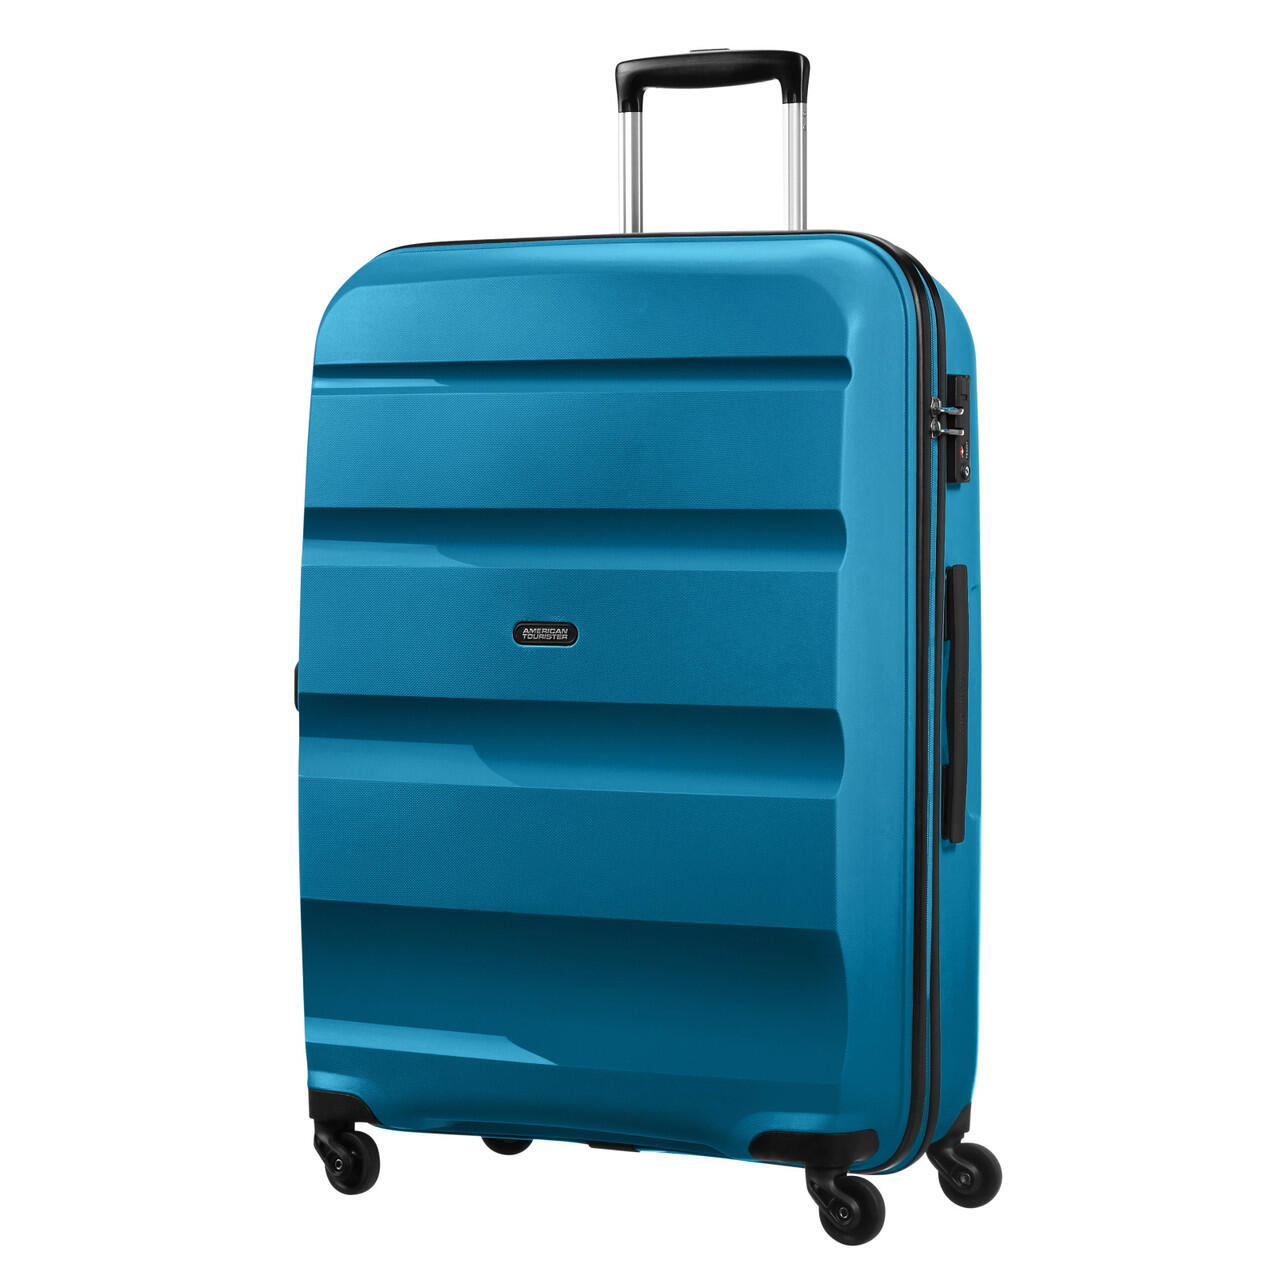 Bon Air 4 Wheel Large Suitcase - 75cm - Blue 2/7